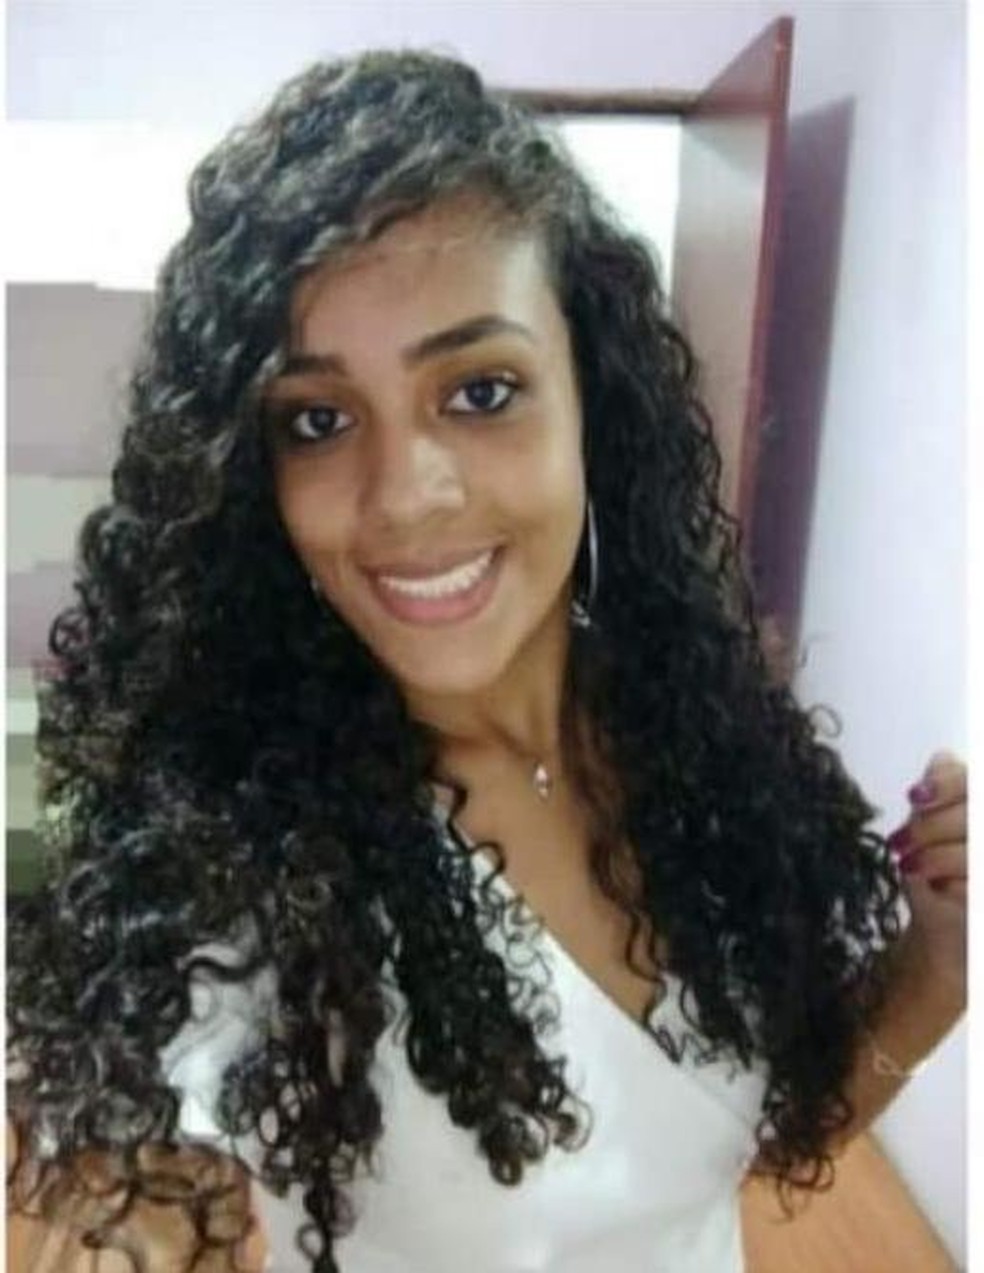 Morta pelo ex-namorado, Thaís Fernanda Ribeiro completou 21 anos no último dia 8 — Foto: Arquivo pessoal